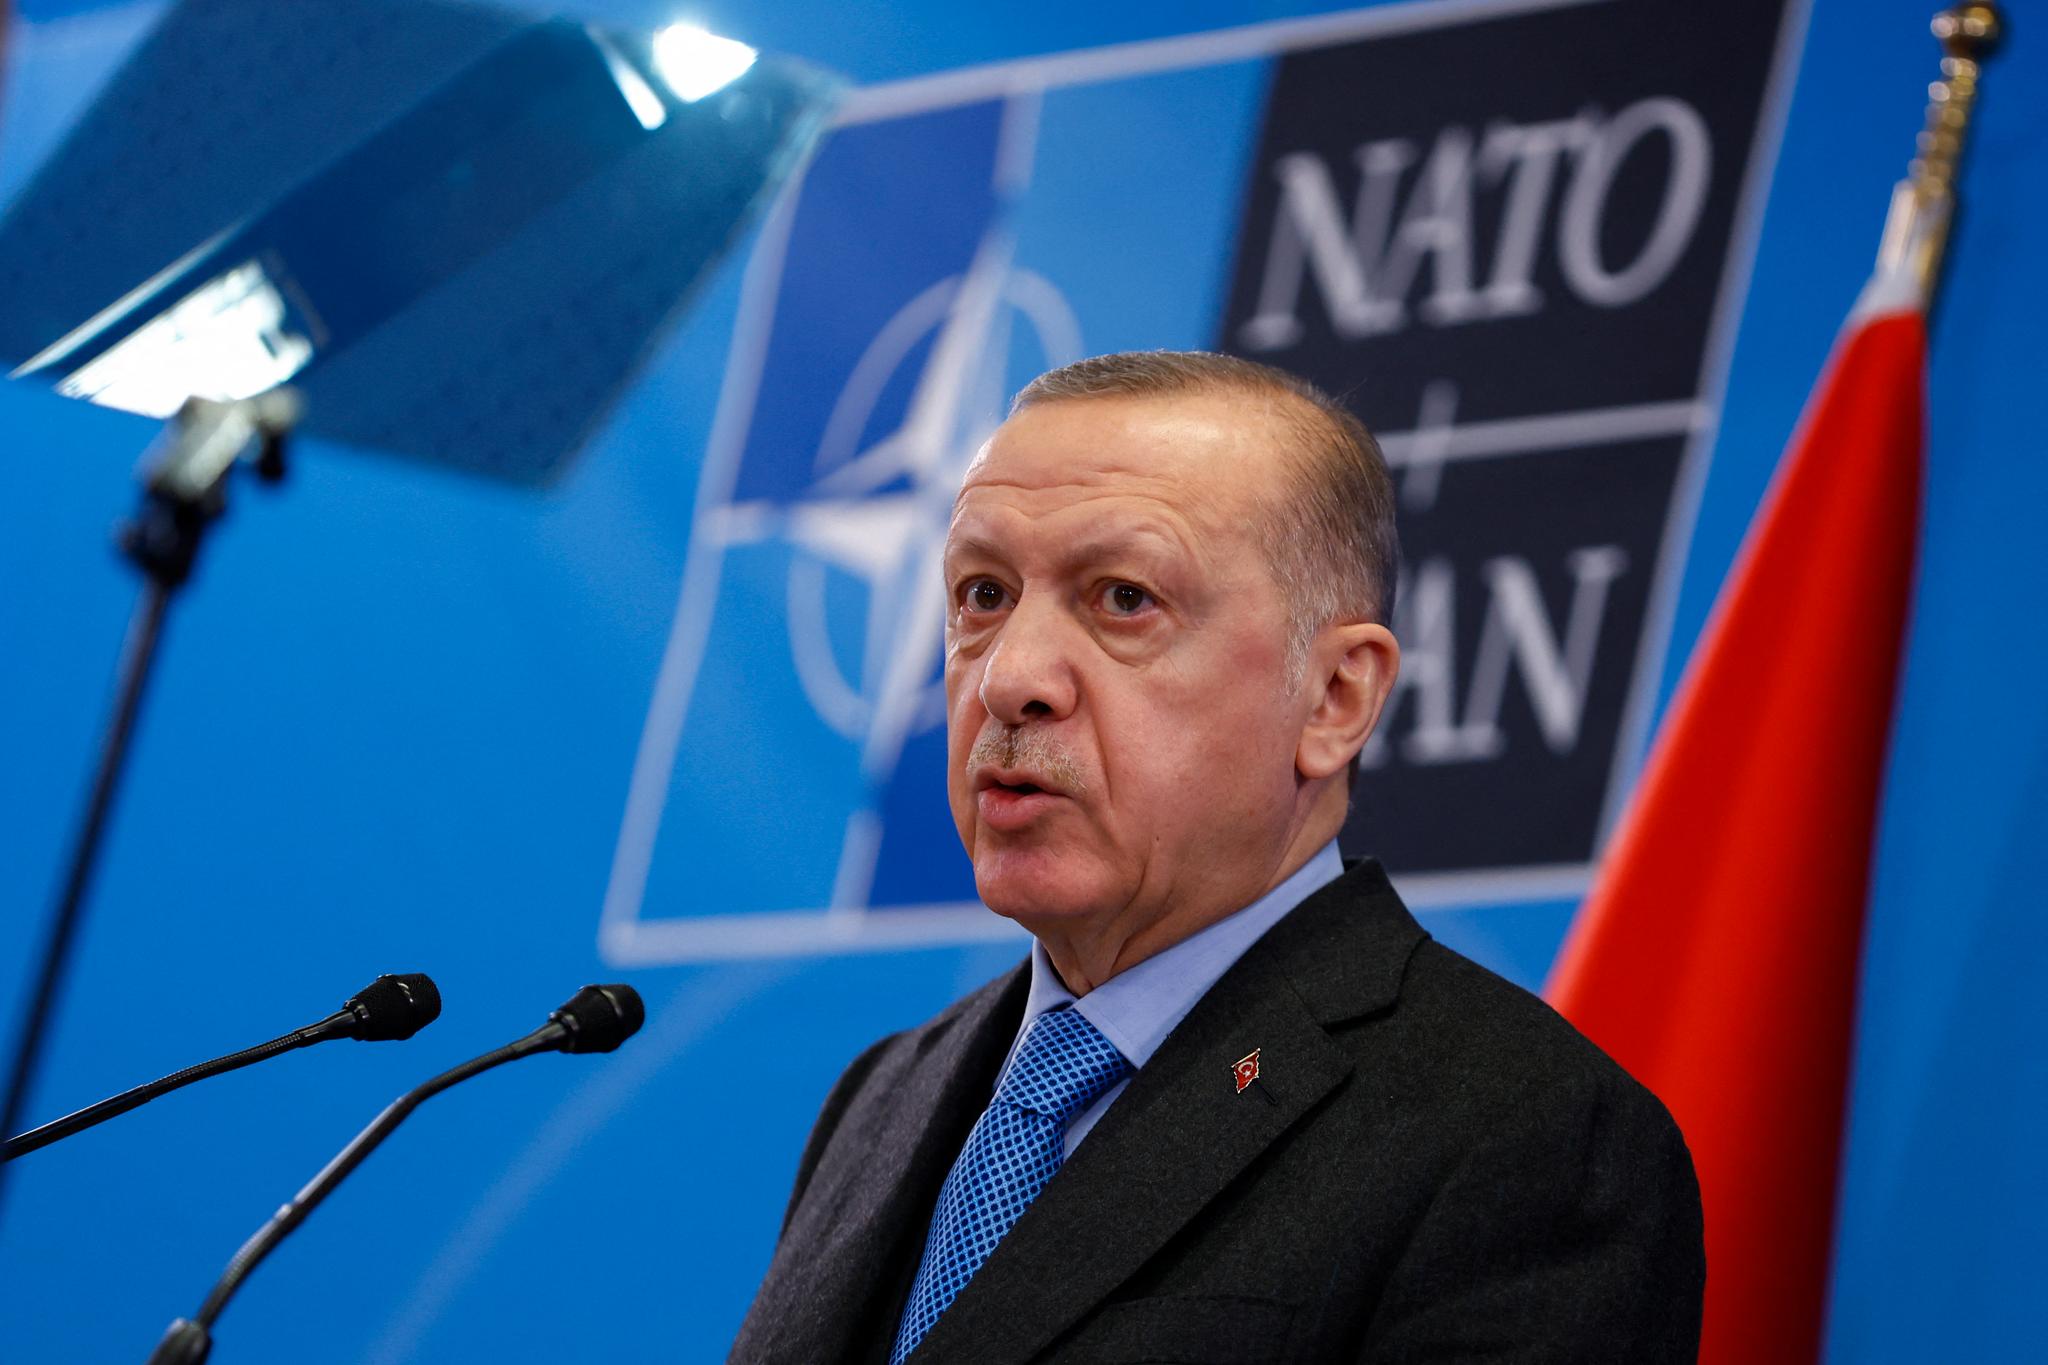 Tyrkias president Recep Tayyip Erdogan fotografert under et Nato-toppmøte i Brussel i mars.